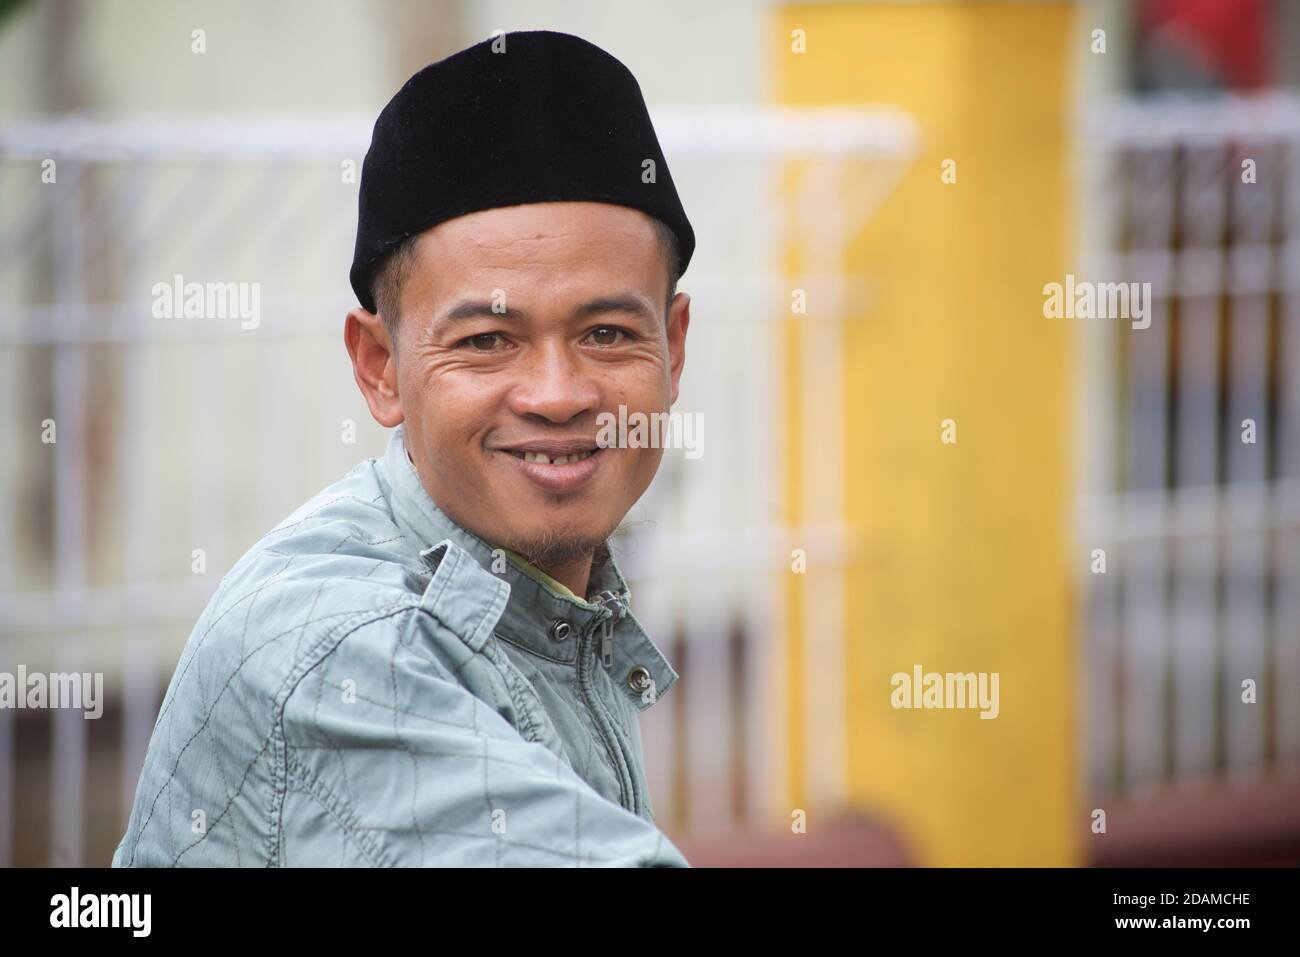 Uomo indonesiano con caratteristico cappello di tipo songkok. Il songkok o peci o kopiah è un cappuccio ampiamente indossato in se Asia tra gli uomini musulmani. Pringgasela, Lombok, Indonesia. Sasak. Foto Stock